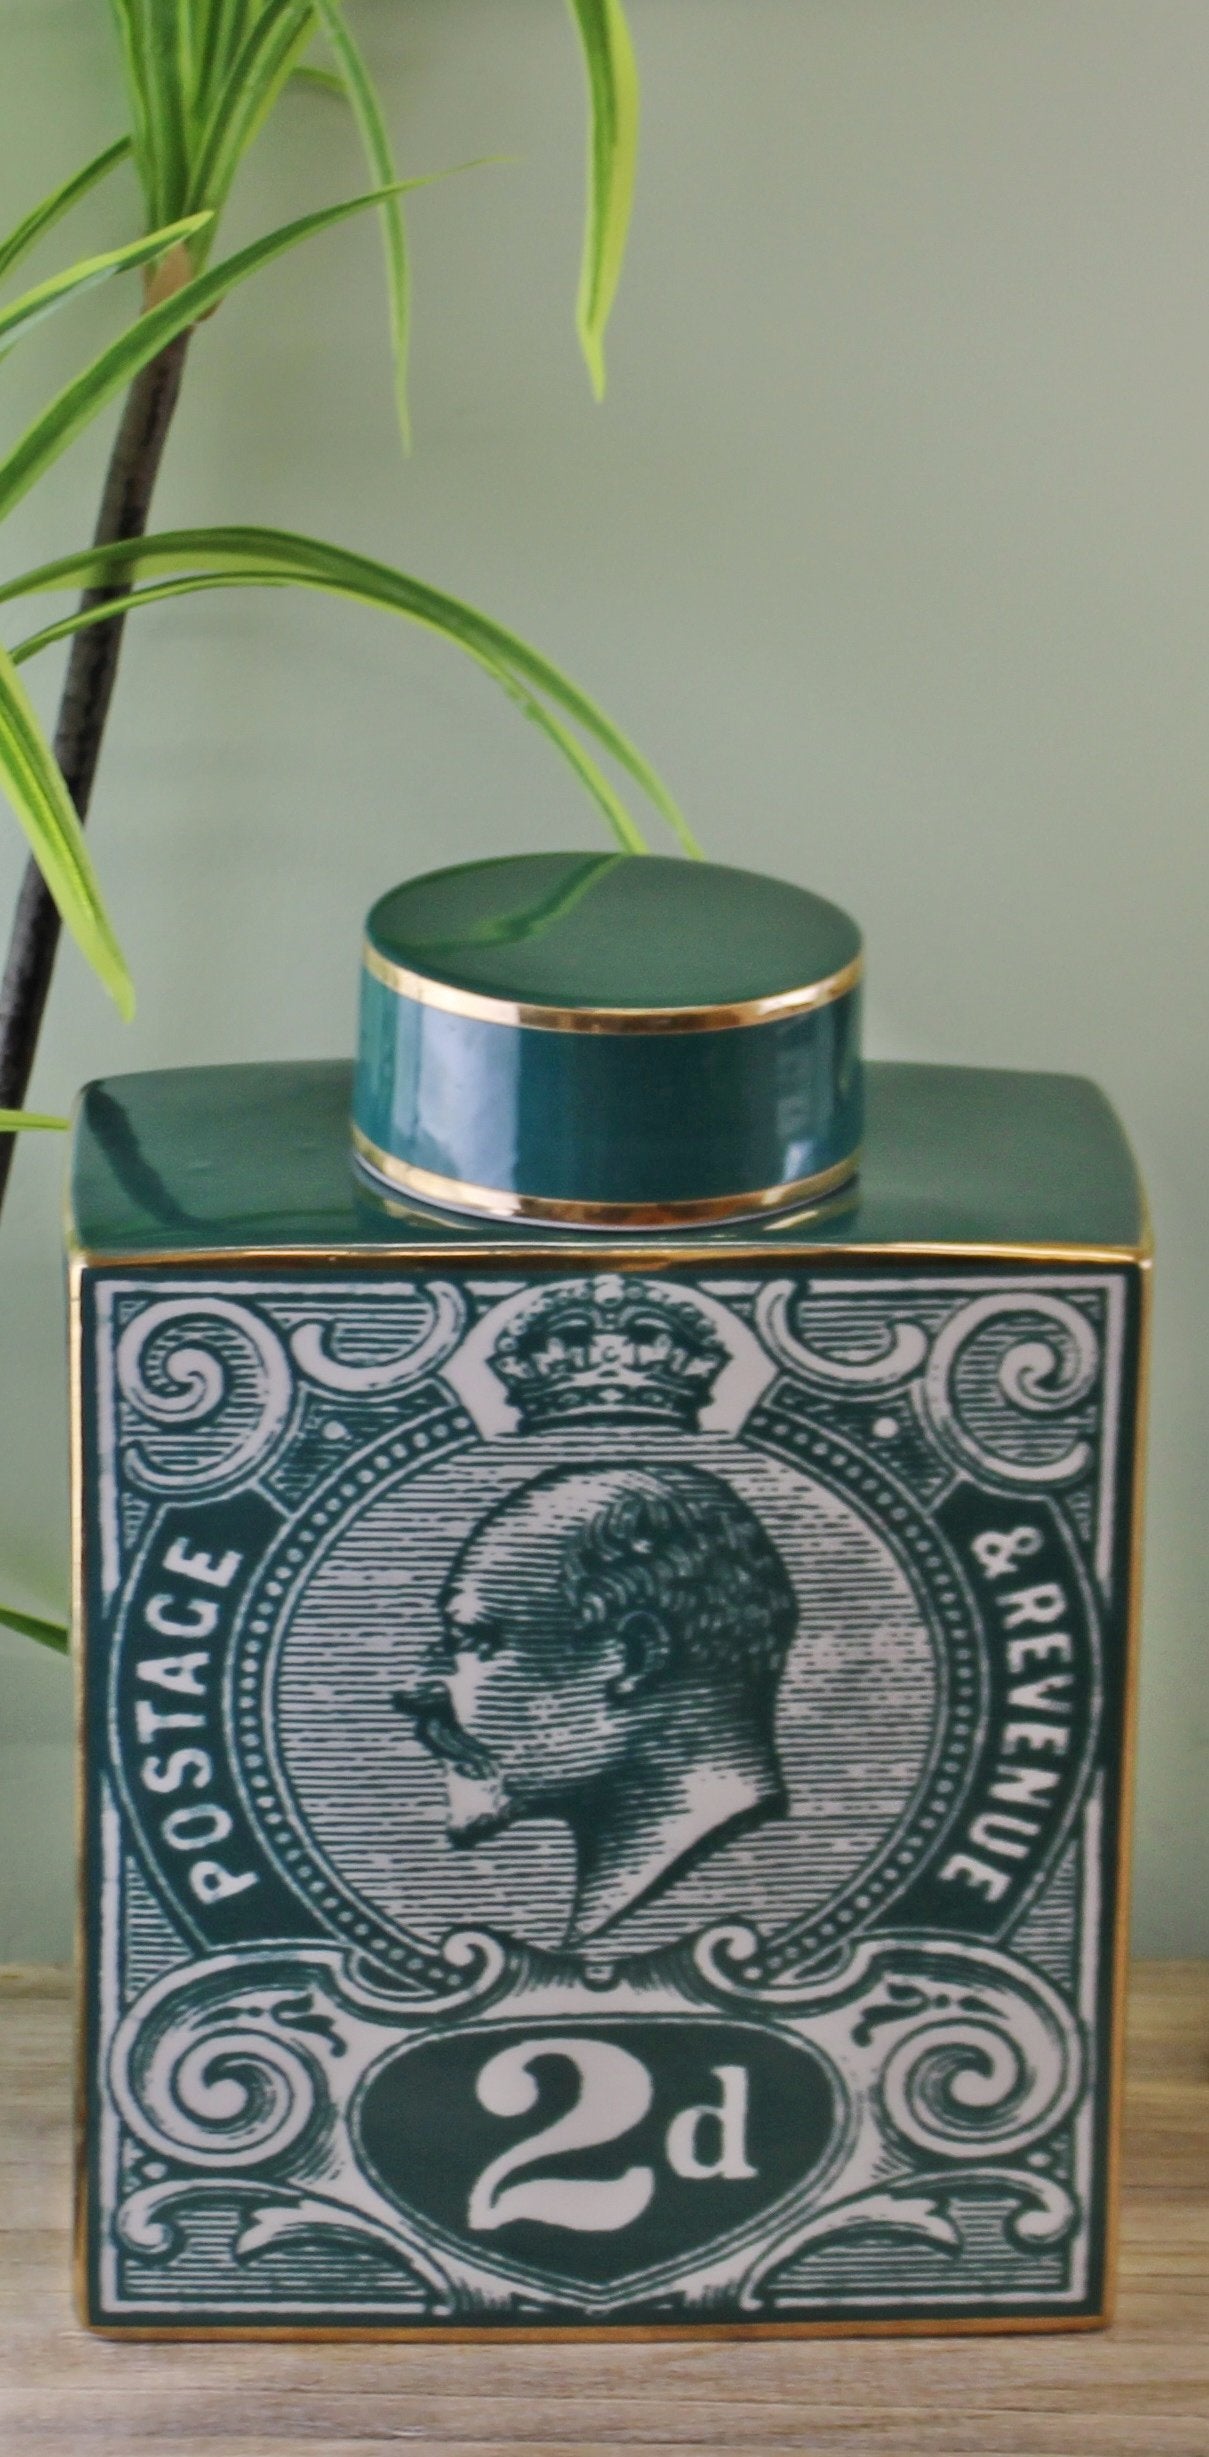 Large Postage Stamp Decorative Ginger Jar, Teal Green